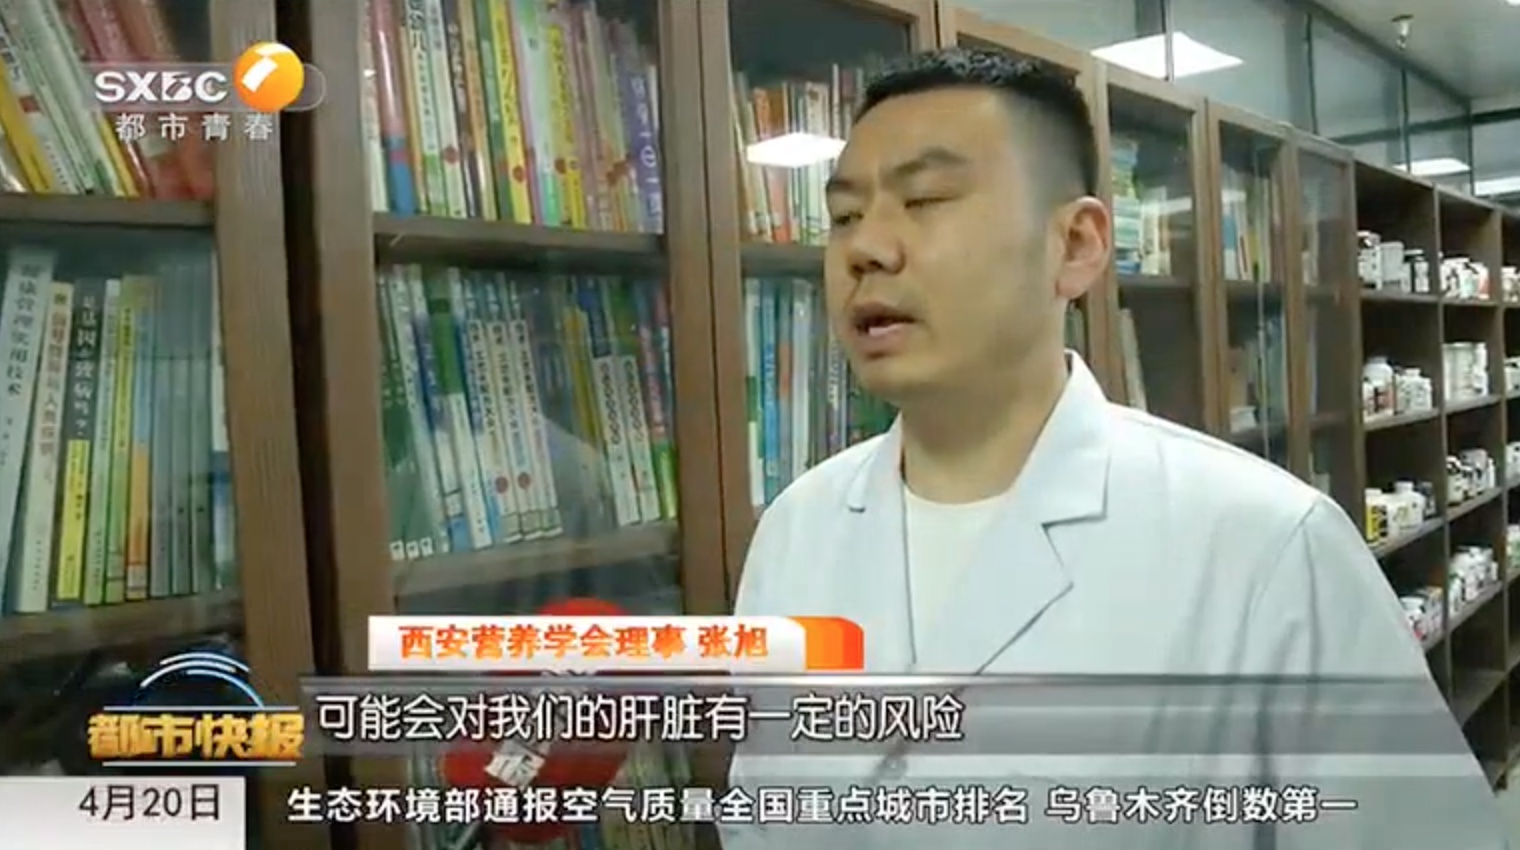 接受陕西电视台《都市快报》采访“疑因常吃变质水果 引发肝癌！”